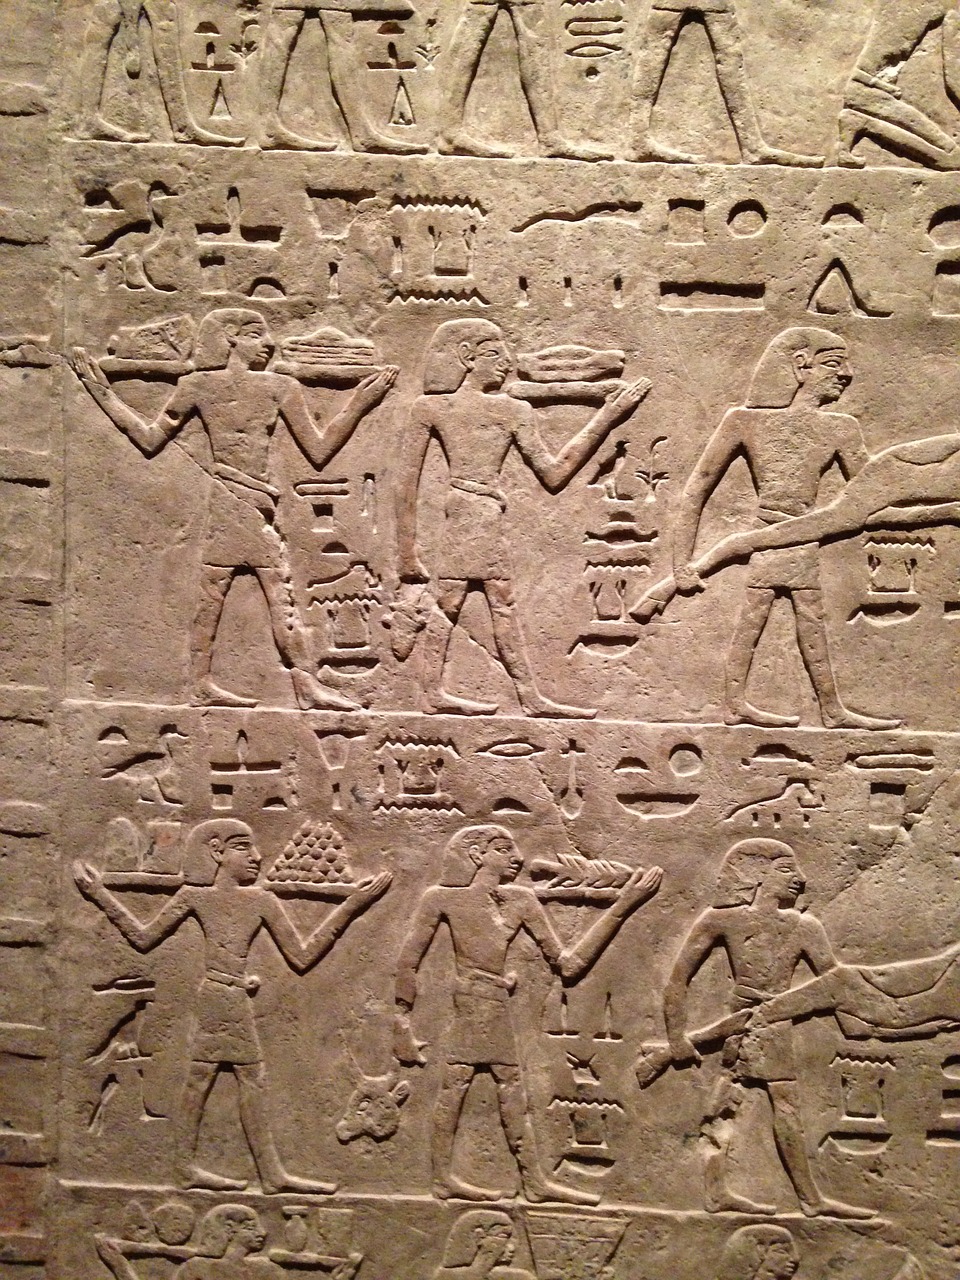 hieroglyphs egypt stone free photo